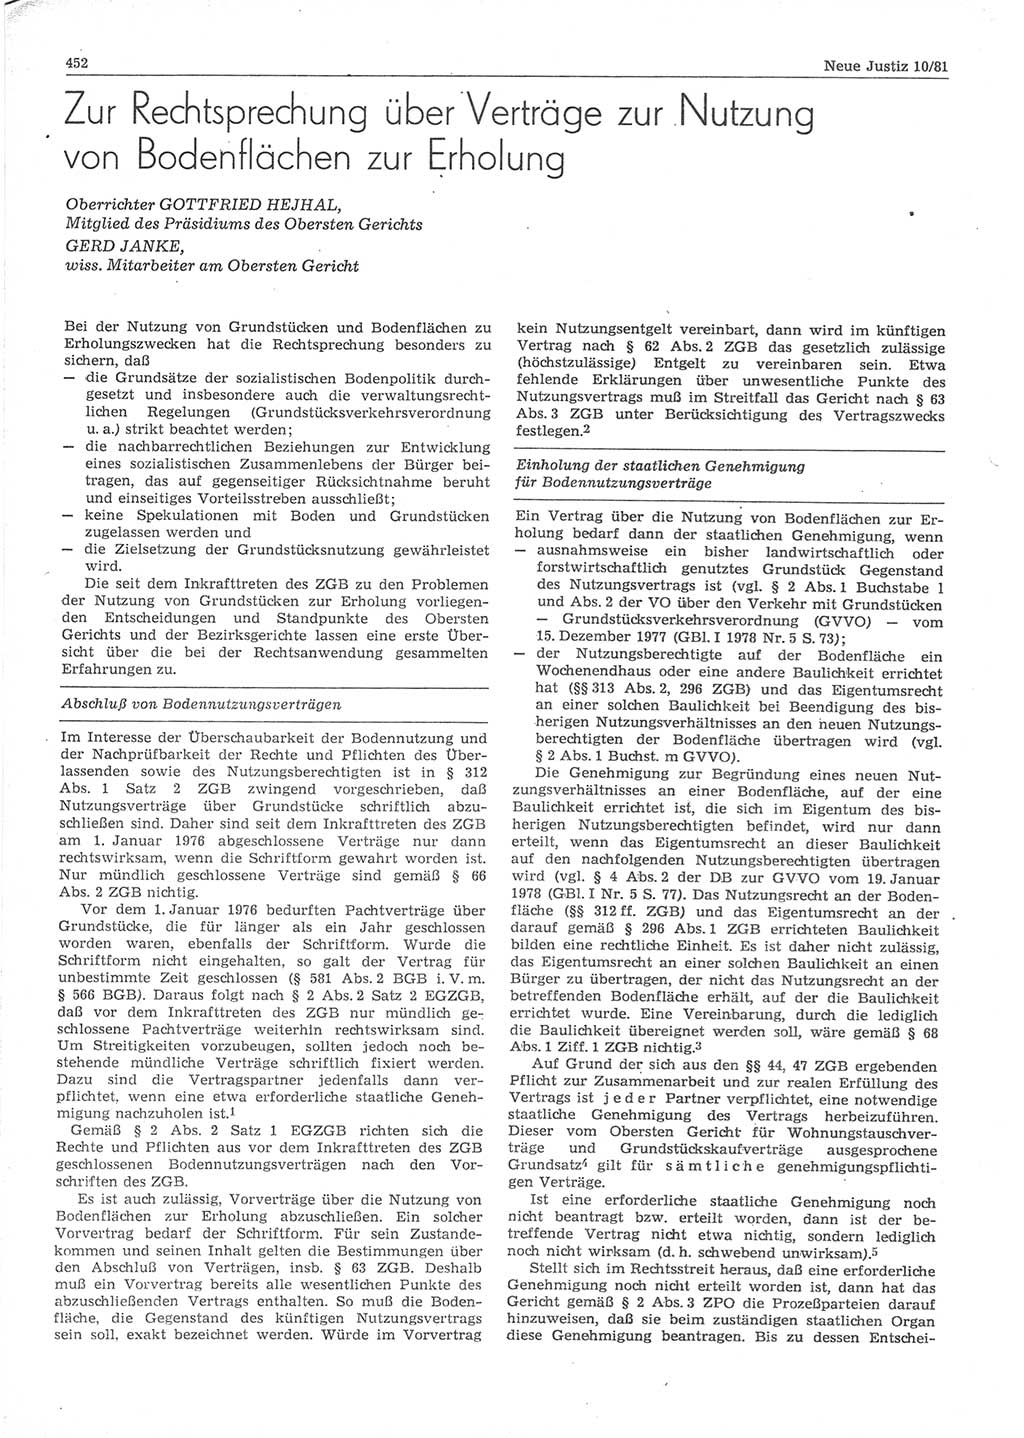 Neue Justiz (NJ), Zeitschrift für sozialistisches Recht und Gesetzlichkeit [Deutsche Demokratische Republik (DDR)], 35. Jahrgang 1981, Seite 452 (NJ DDR 1981, S. 452)